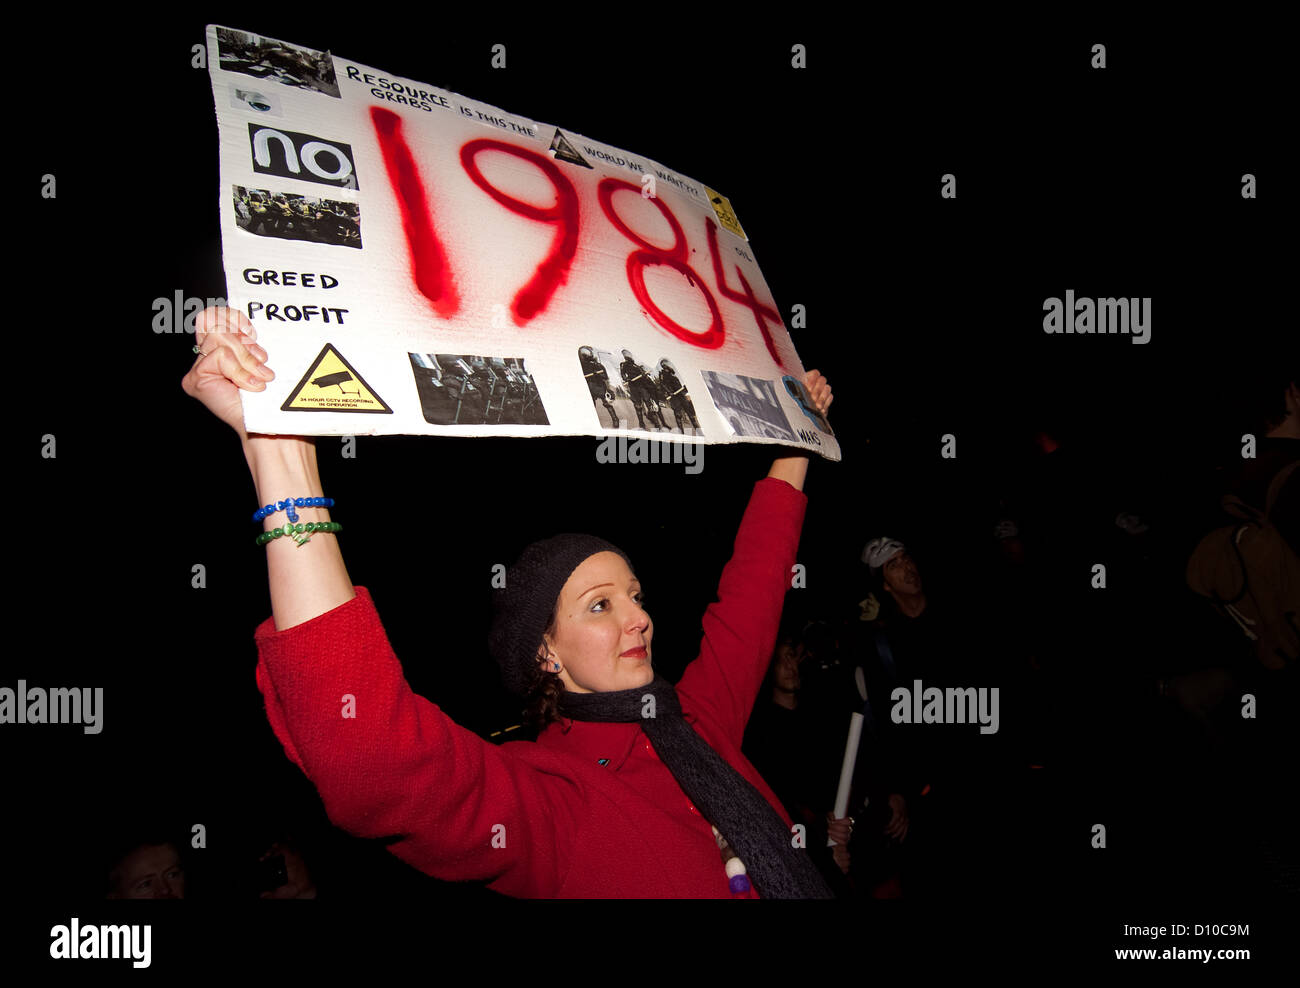 Un manifestant est titulaire d'un placard pendant l'opération vendetta protester point de rencontre à Trafalgar square. Banque D'Images